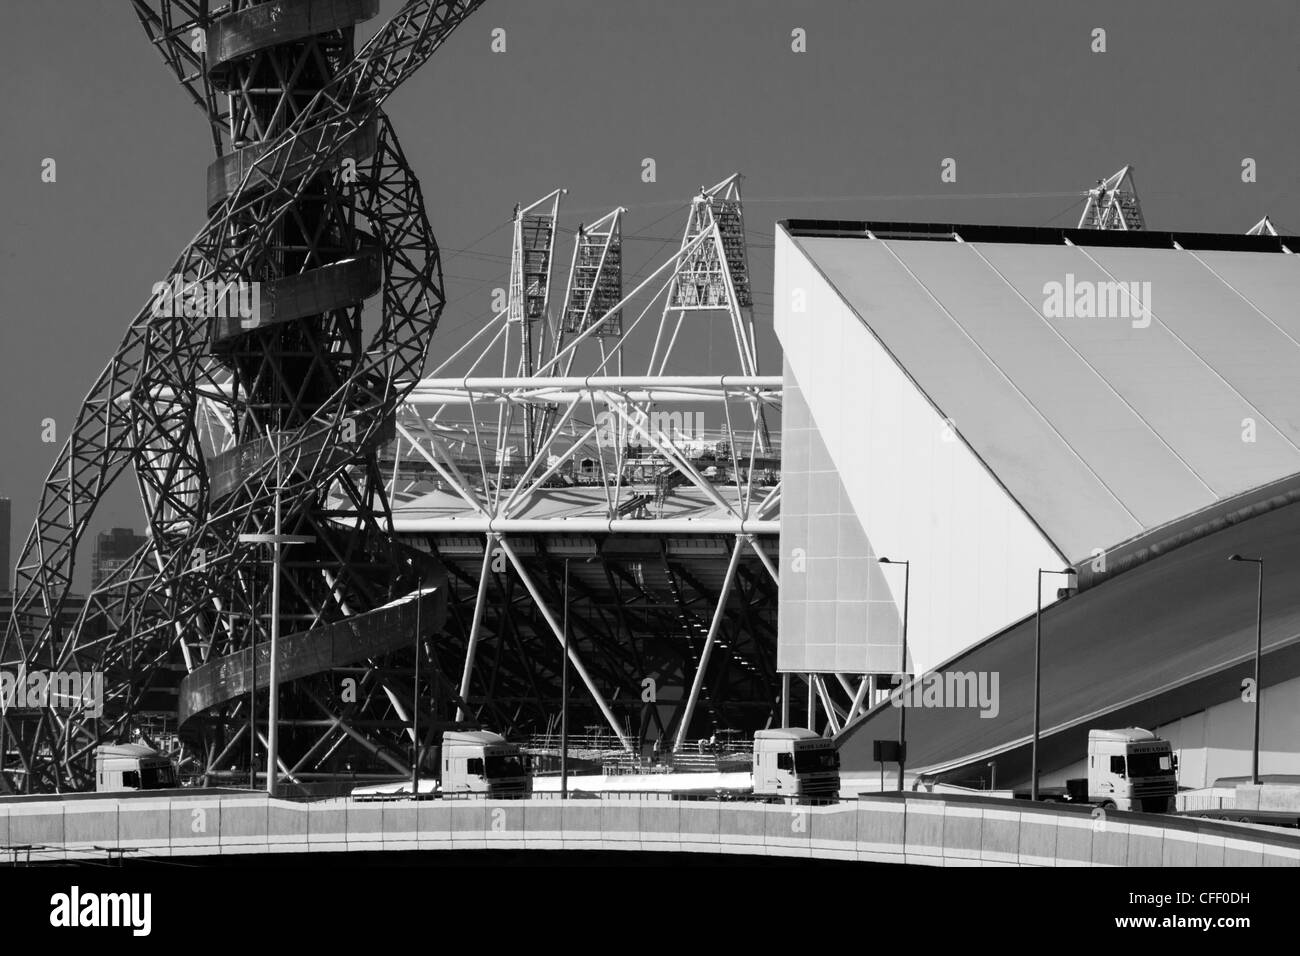 Paesaggio di 2012 Olympic sito in costruzione che mostra Aquatics Centre, l'orbita arte tower e il principale stadio di Stratford. Foto Stock